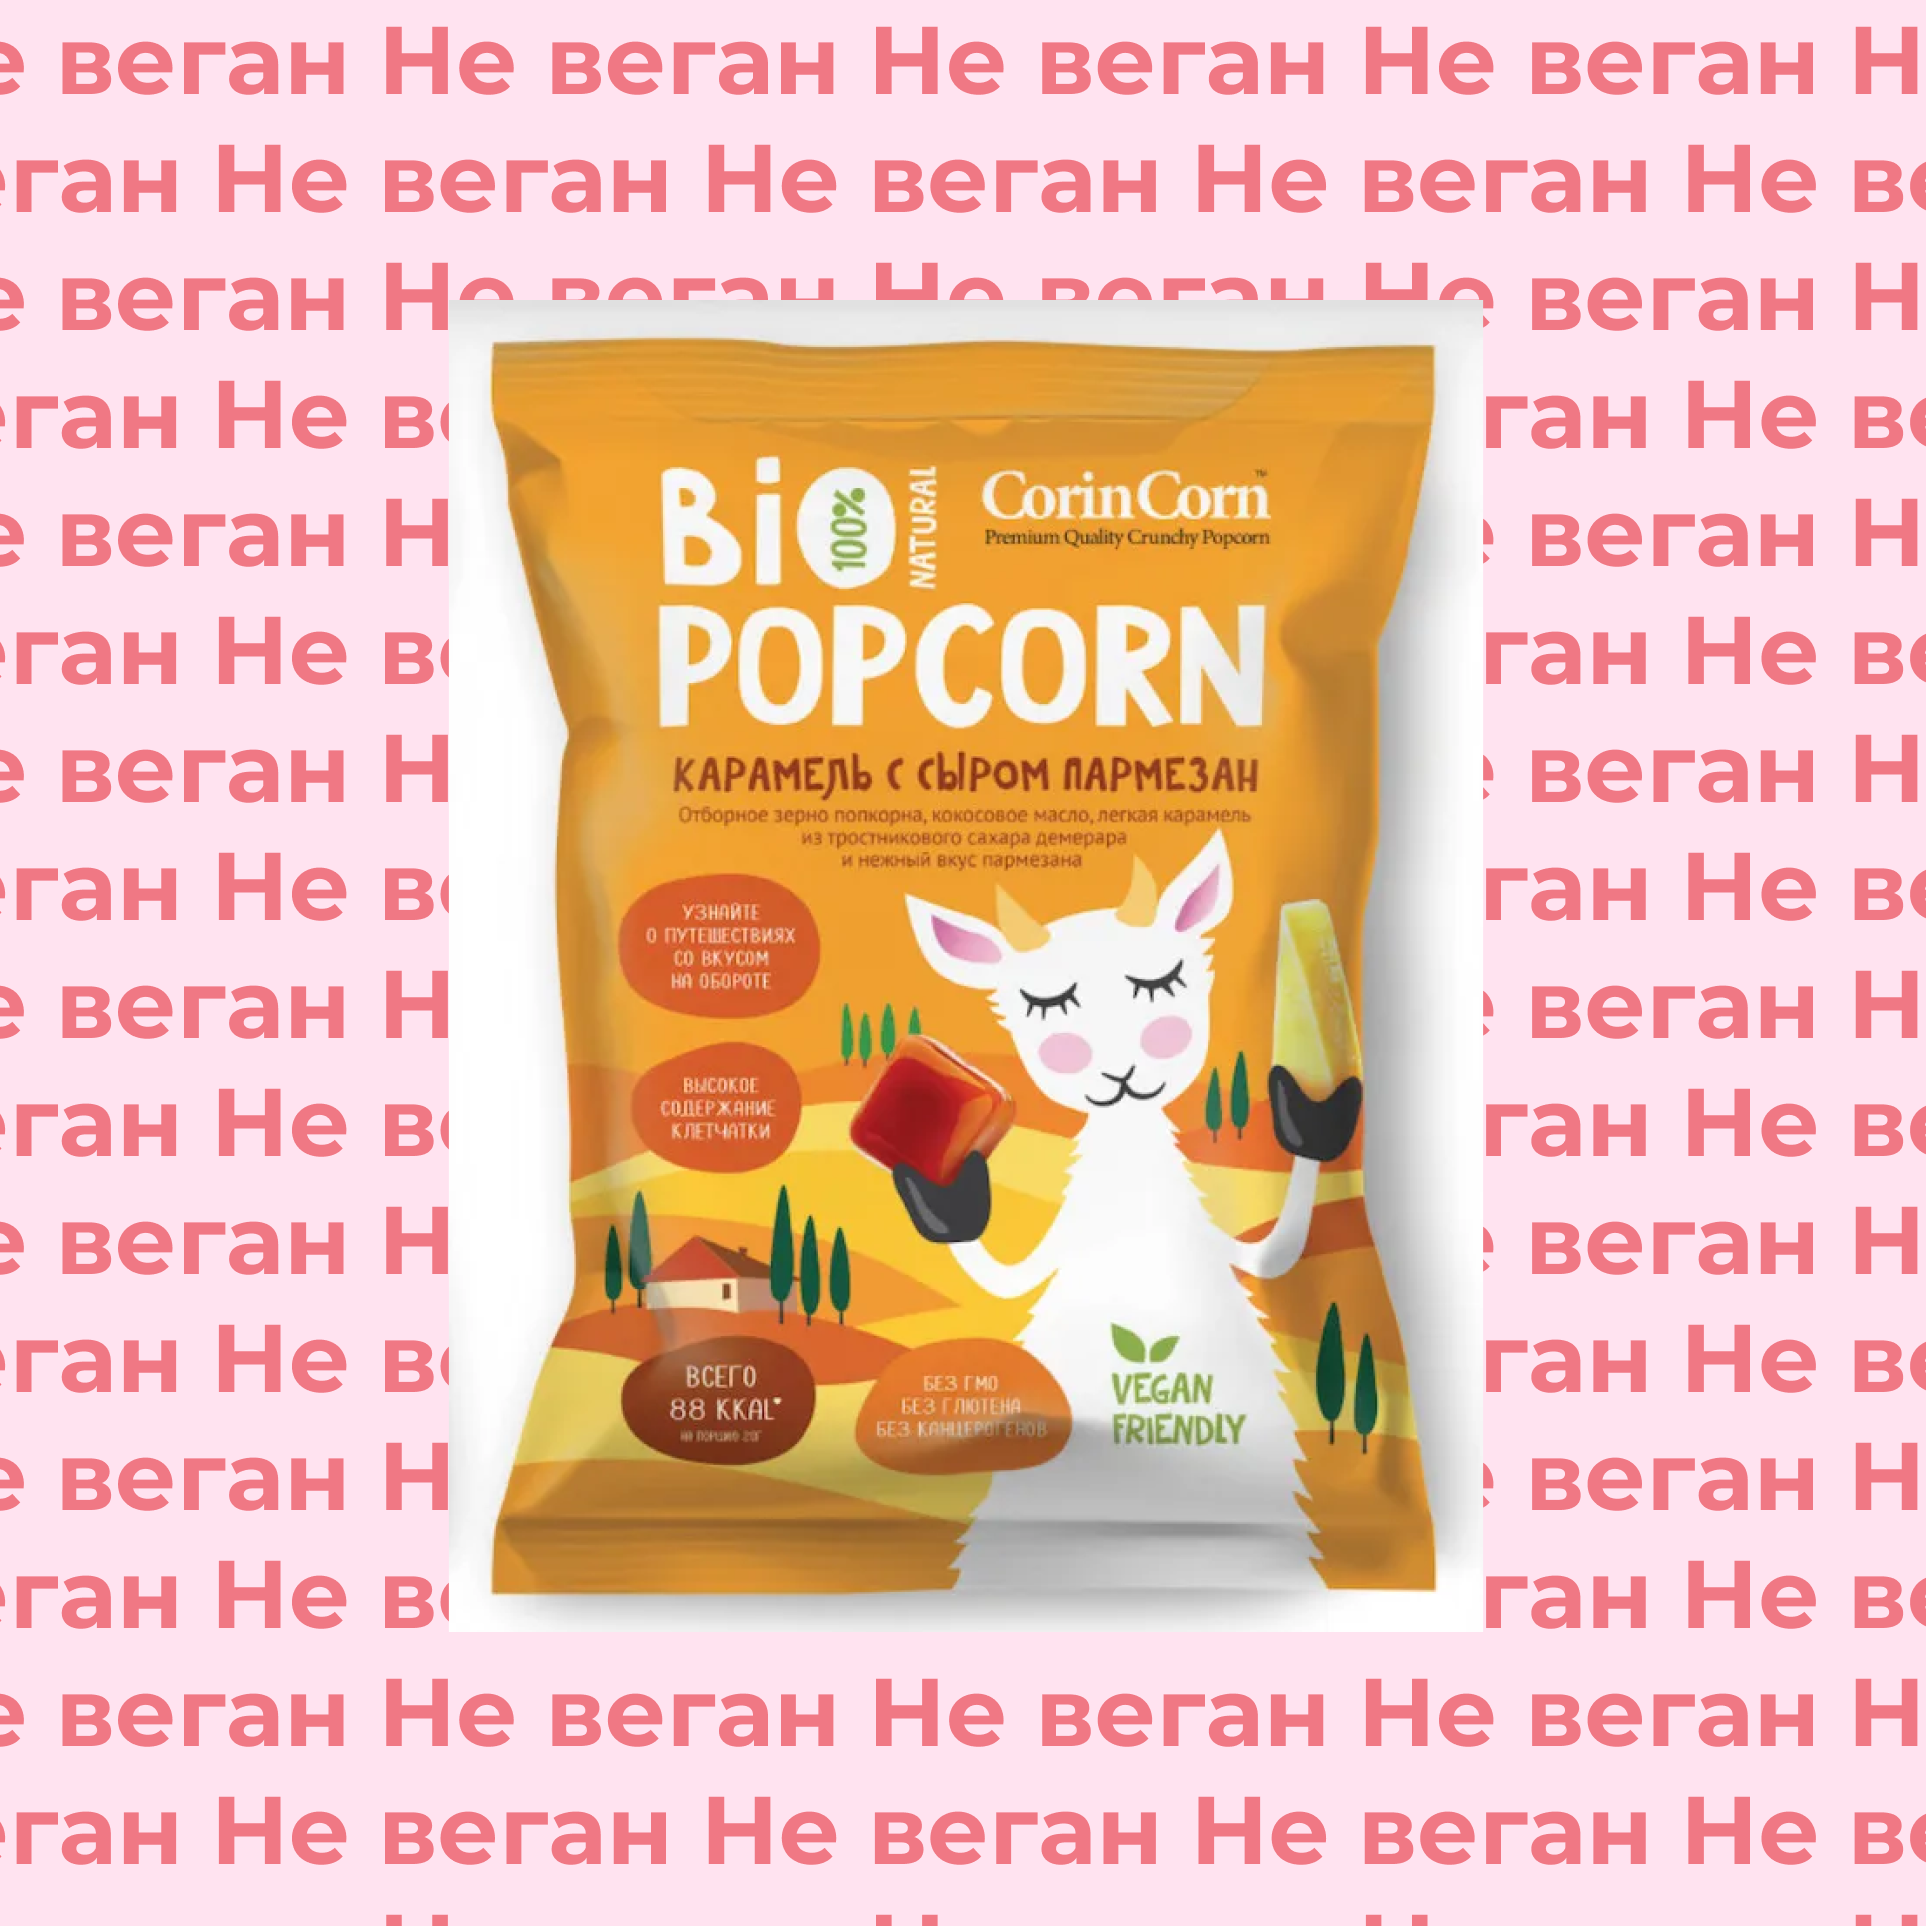 Попкорн сладко-соленый с пикантными добавками Пармезан Bio Popcorn не по вегану